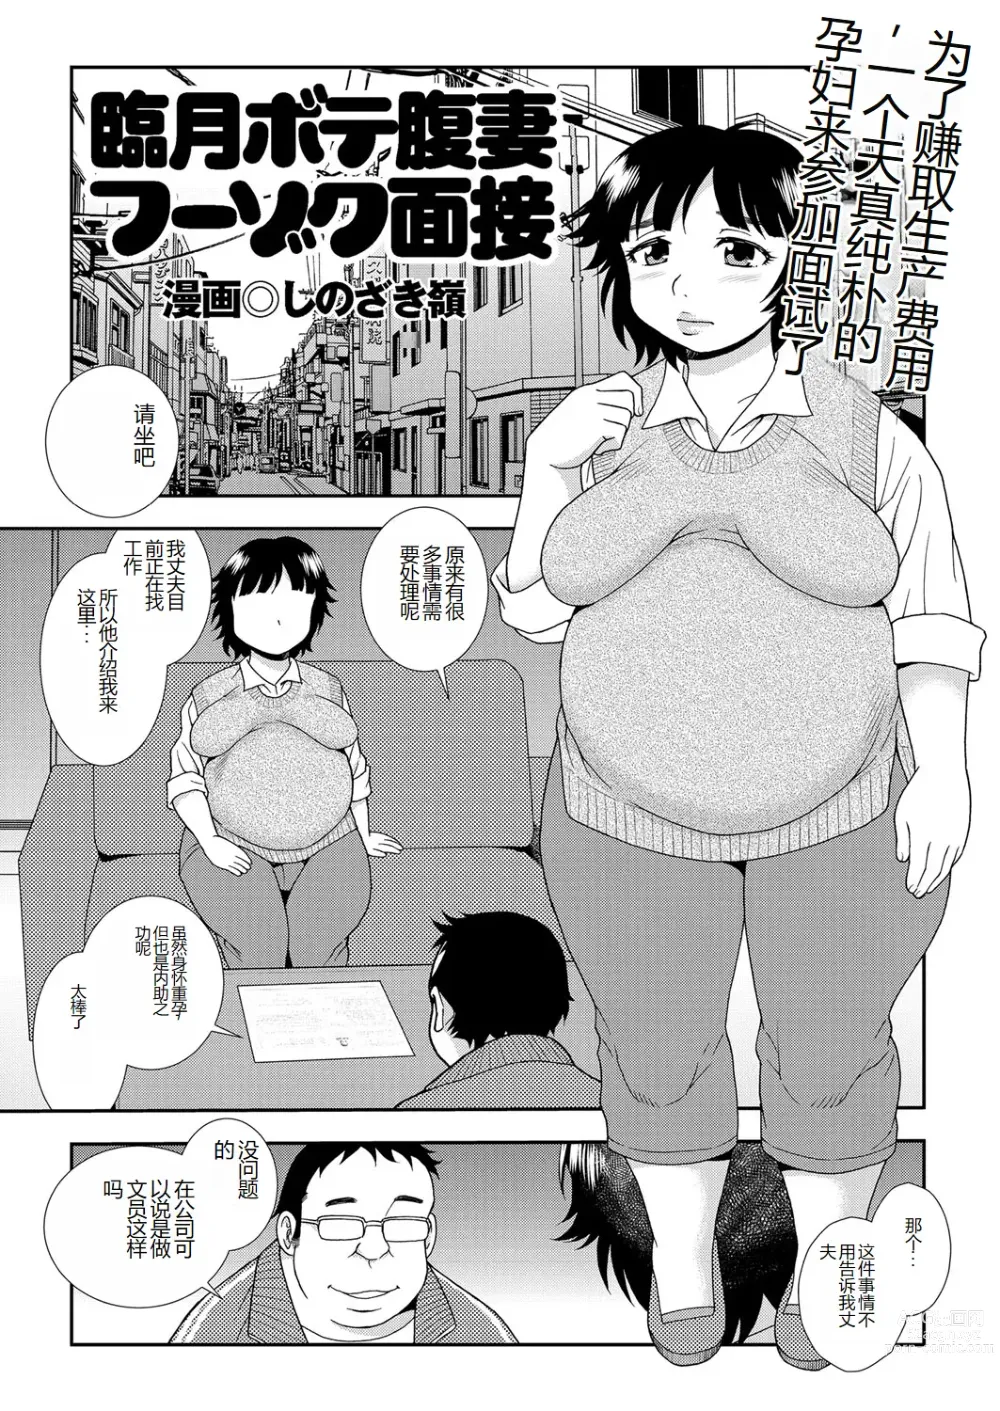 Page 1 of manga Ringetsu botehara tsuma fūzoku mensetsu